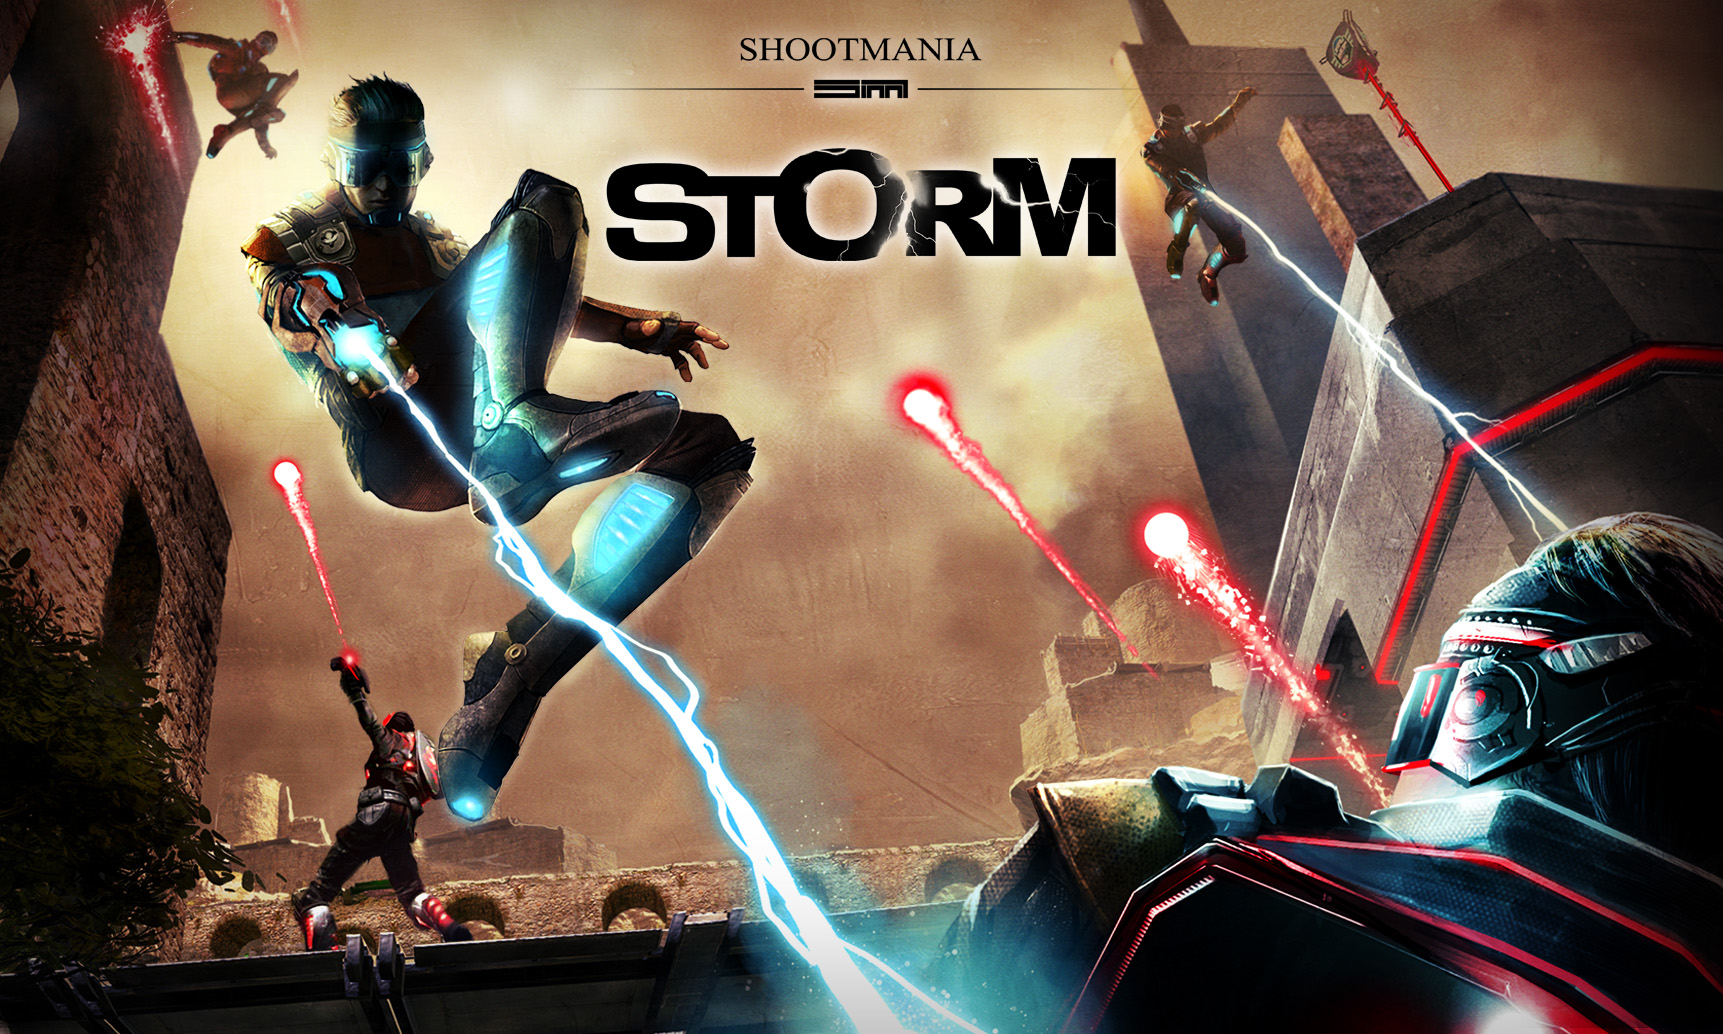 Shootmania Storm Backgrounds, Compatible - PC, Mobile, Gadgets| 1723x1034 px